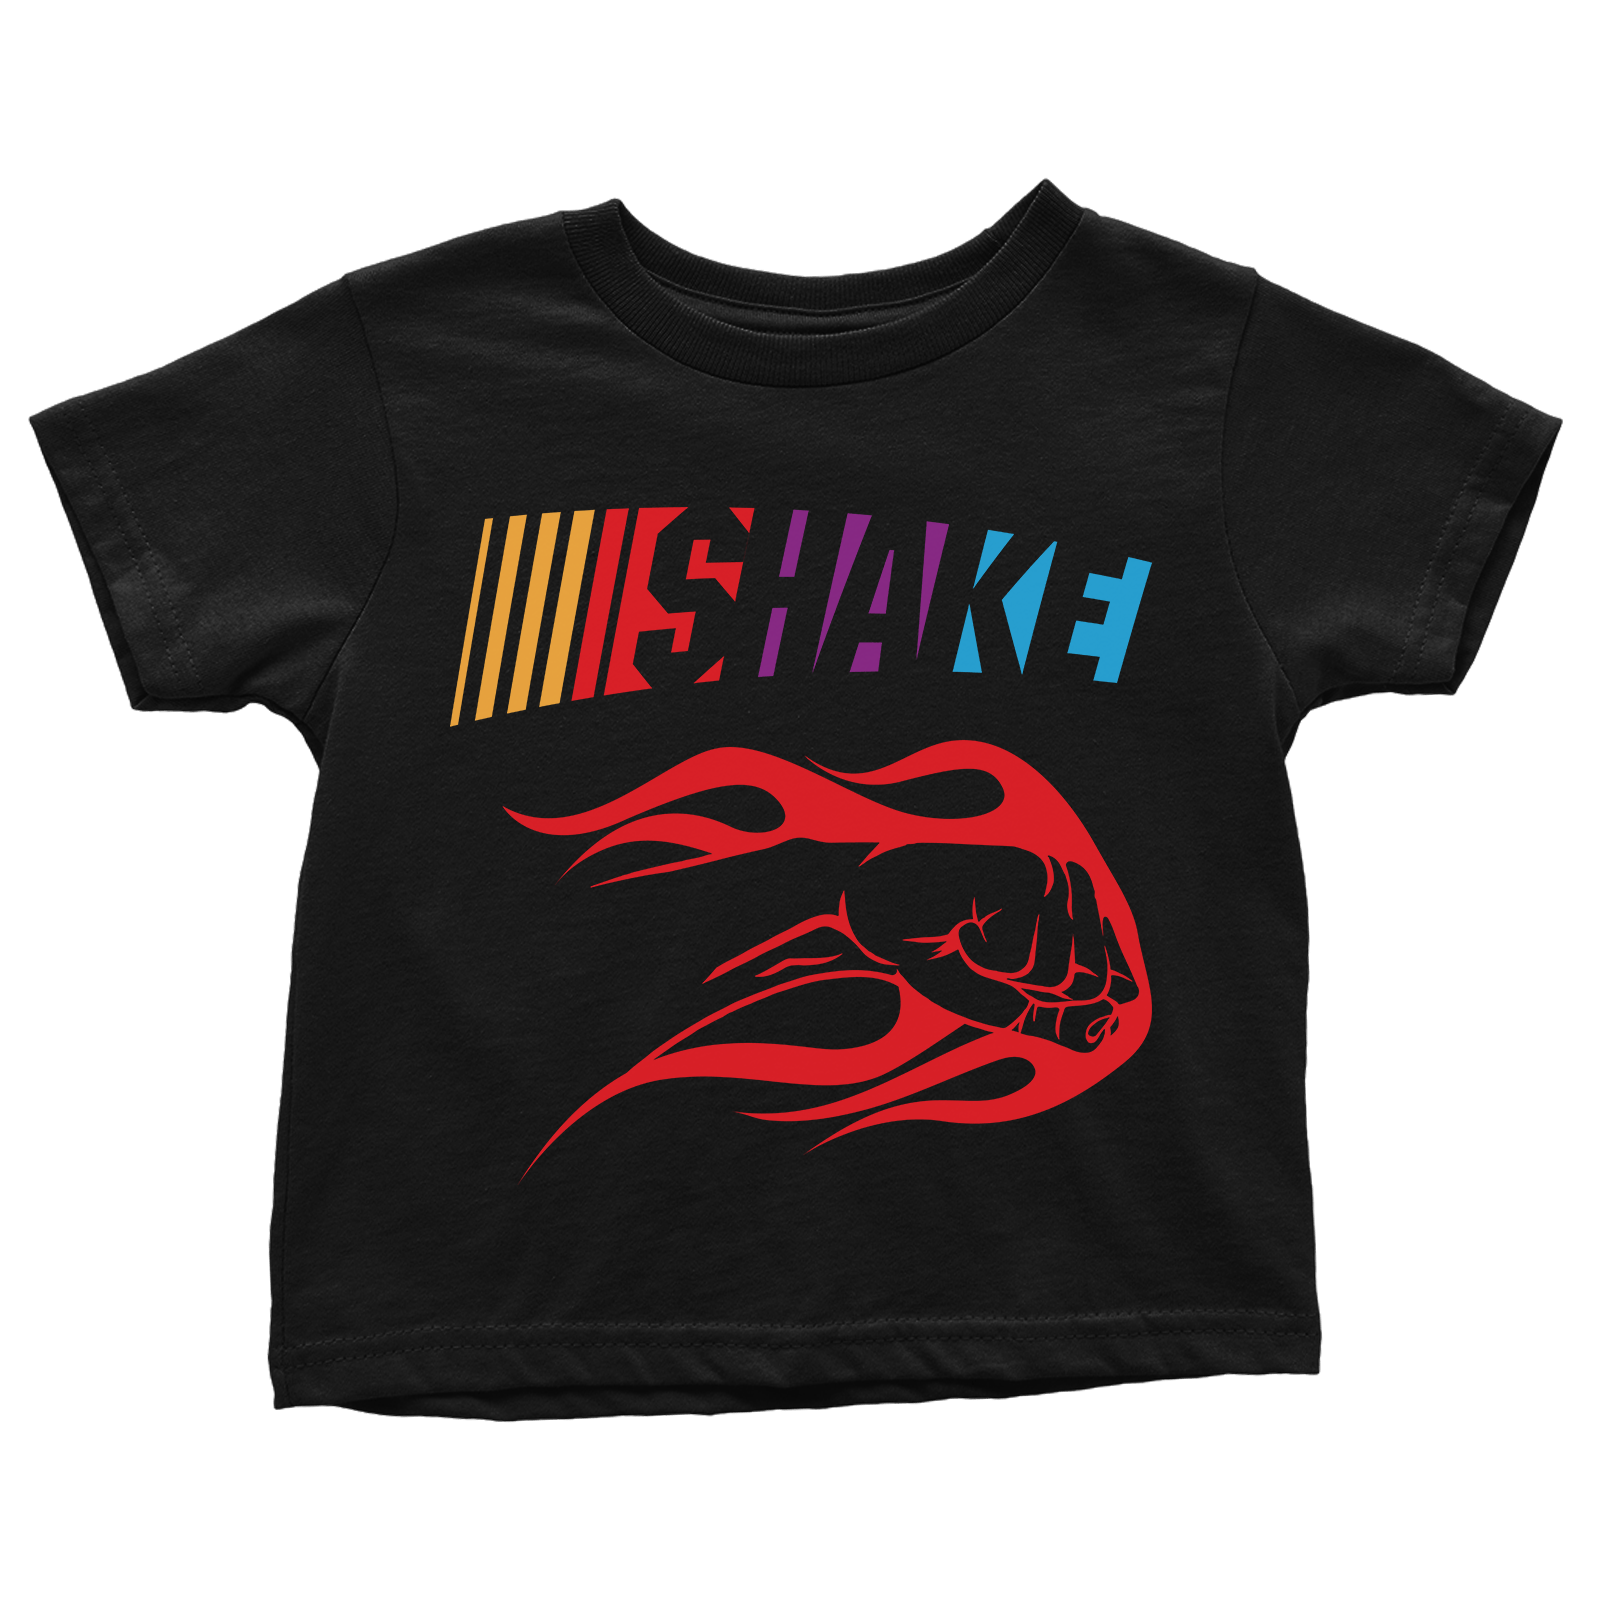 T-shirt Premium Toddler Shirt / Black / 2T Shake - Toddlers